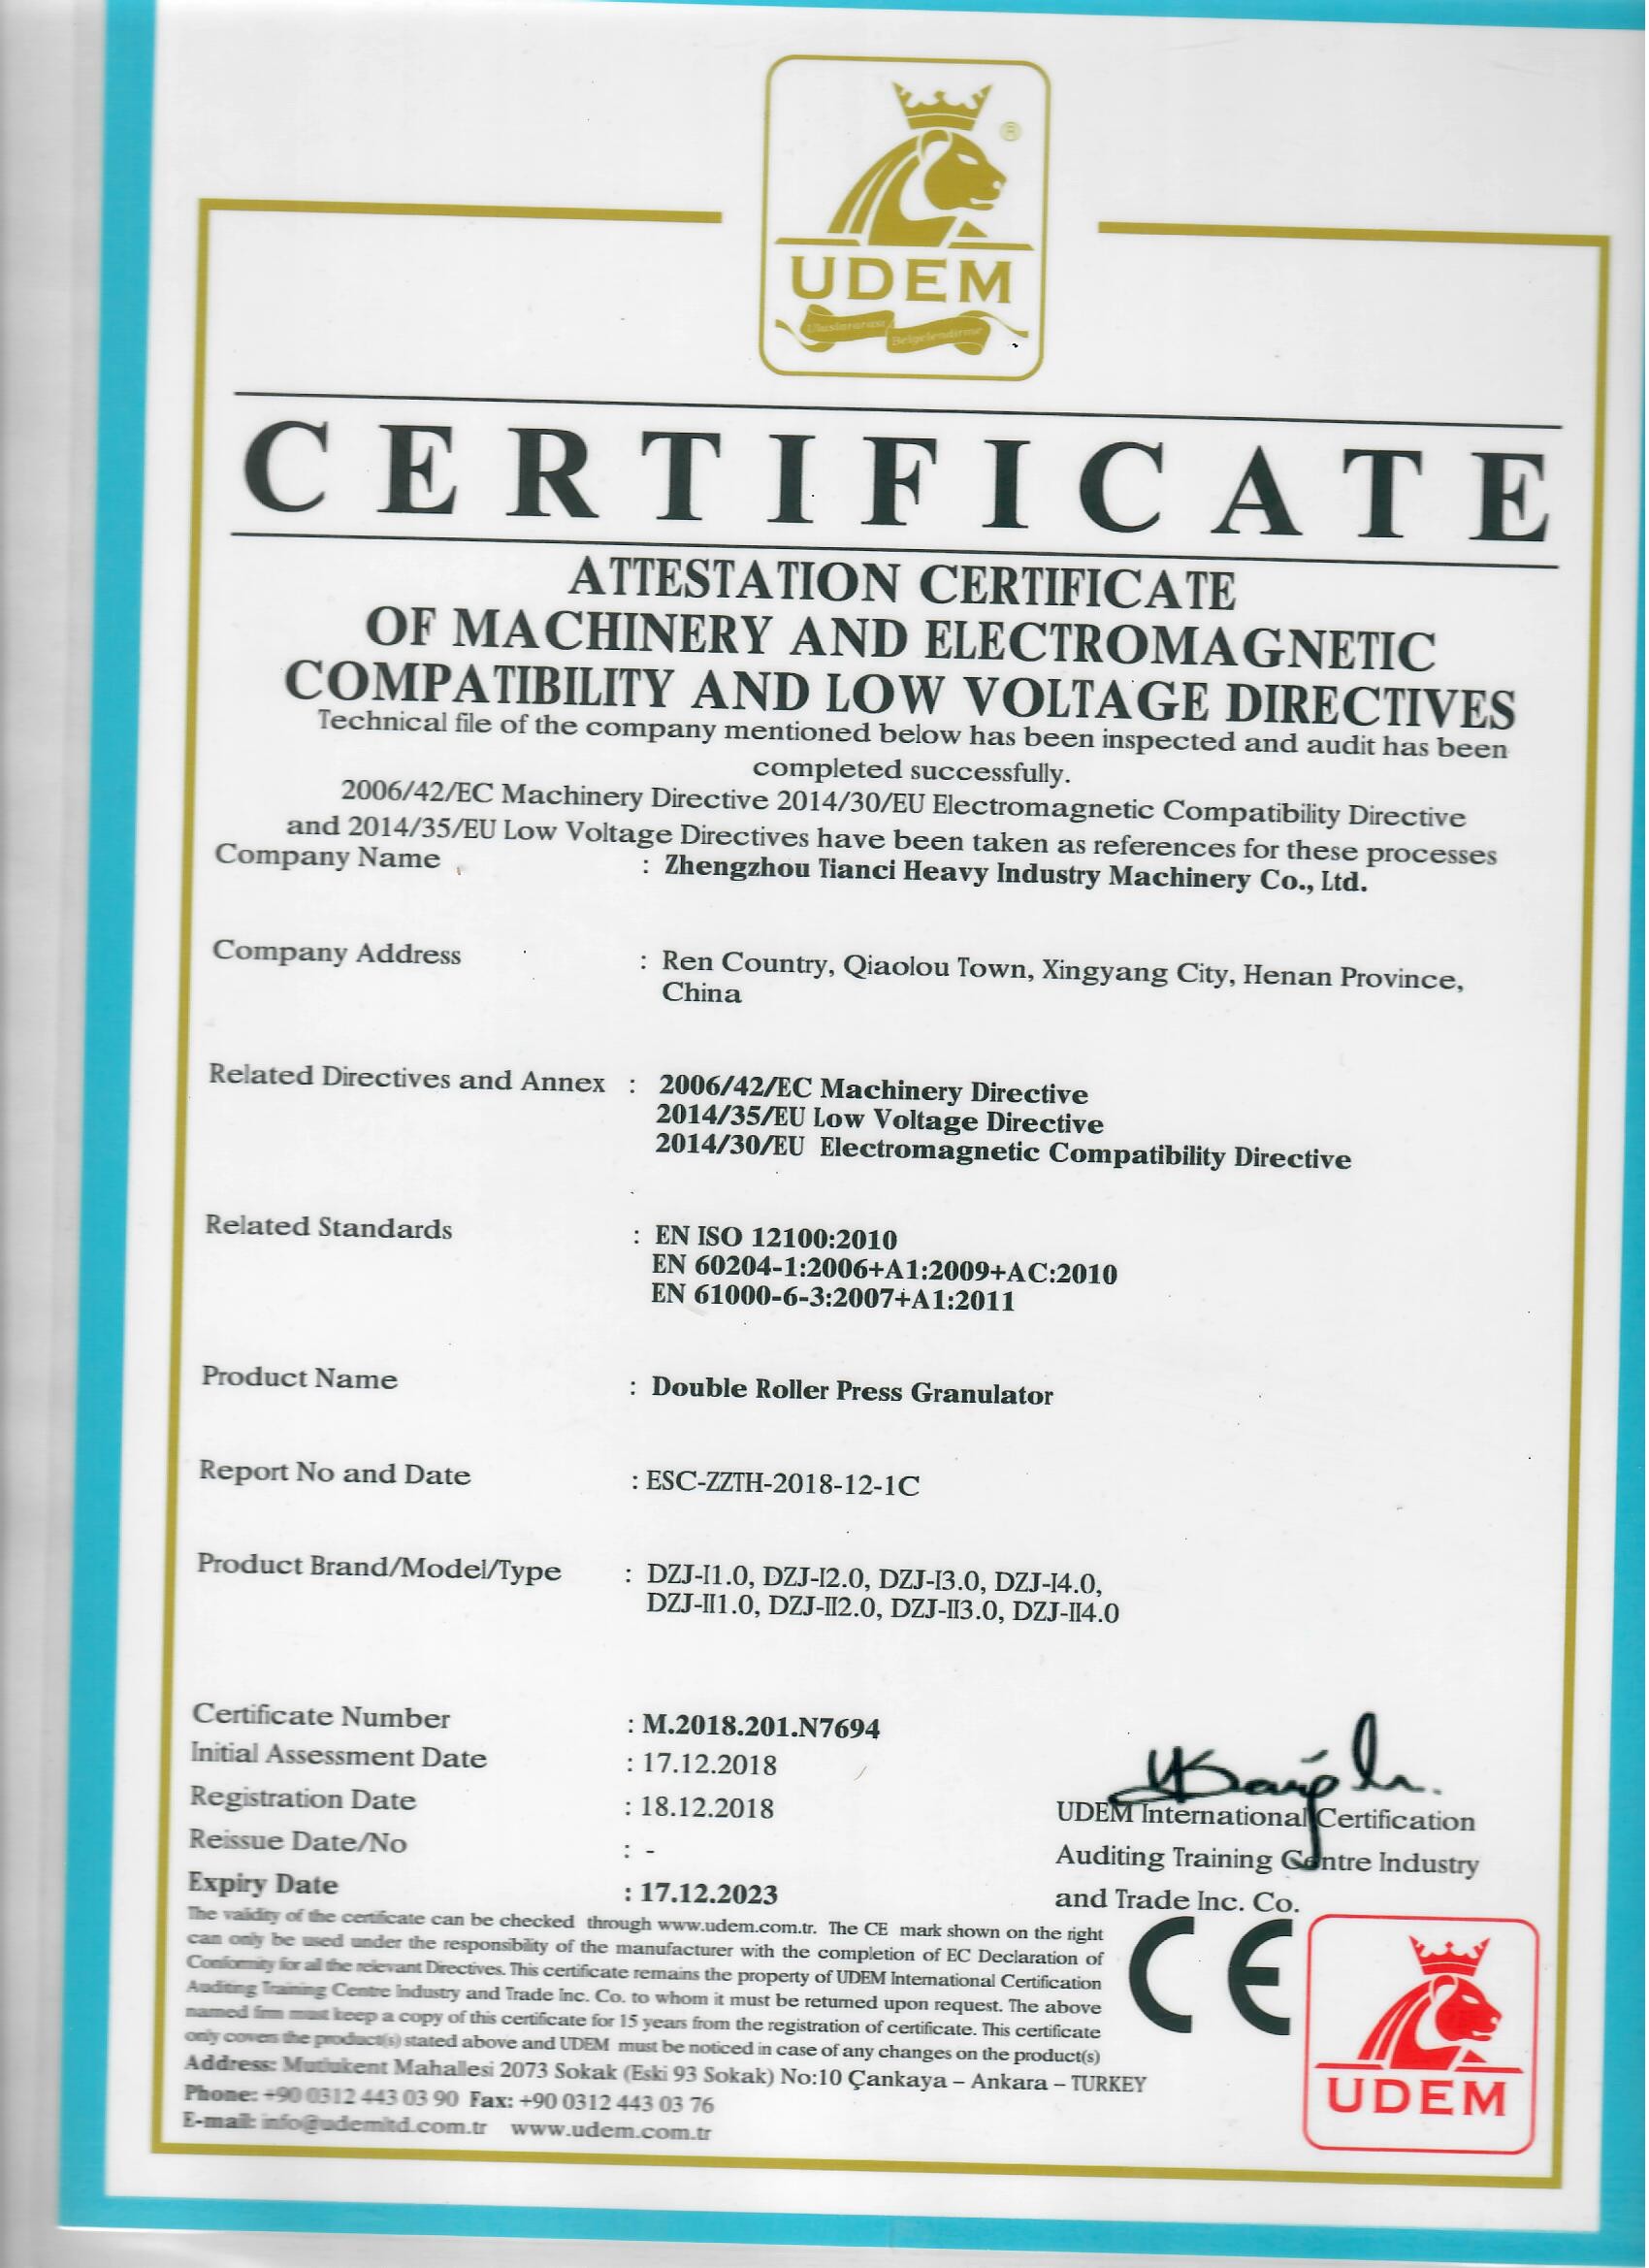 ZHENGZHOU TIANCI HEAVY INDUSTRY MACHINERY CO., LTD. Certifications